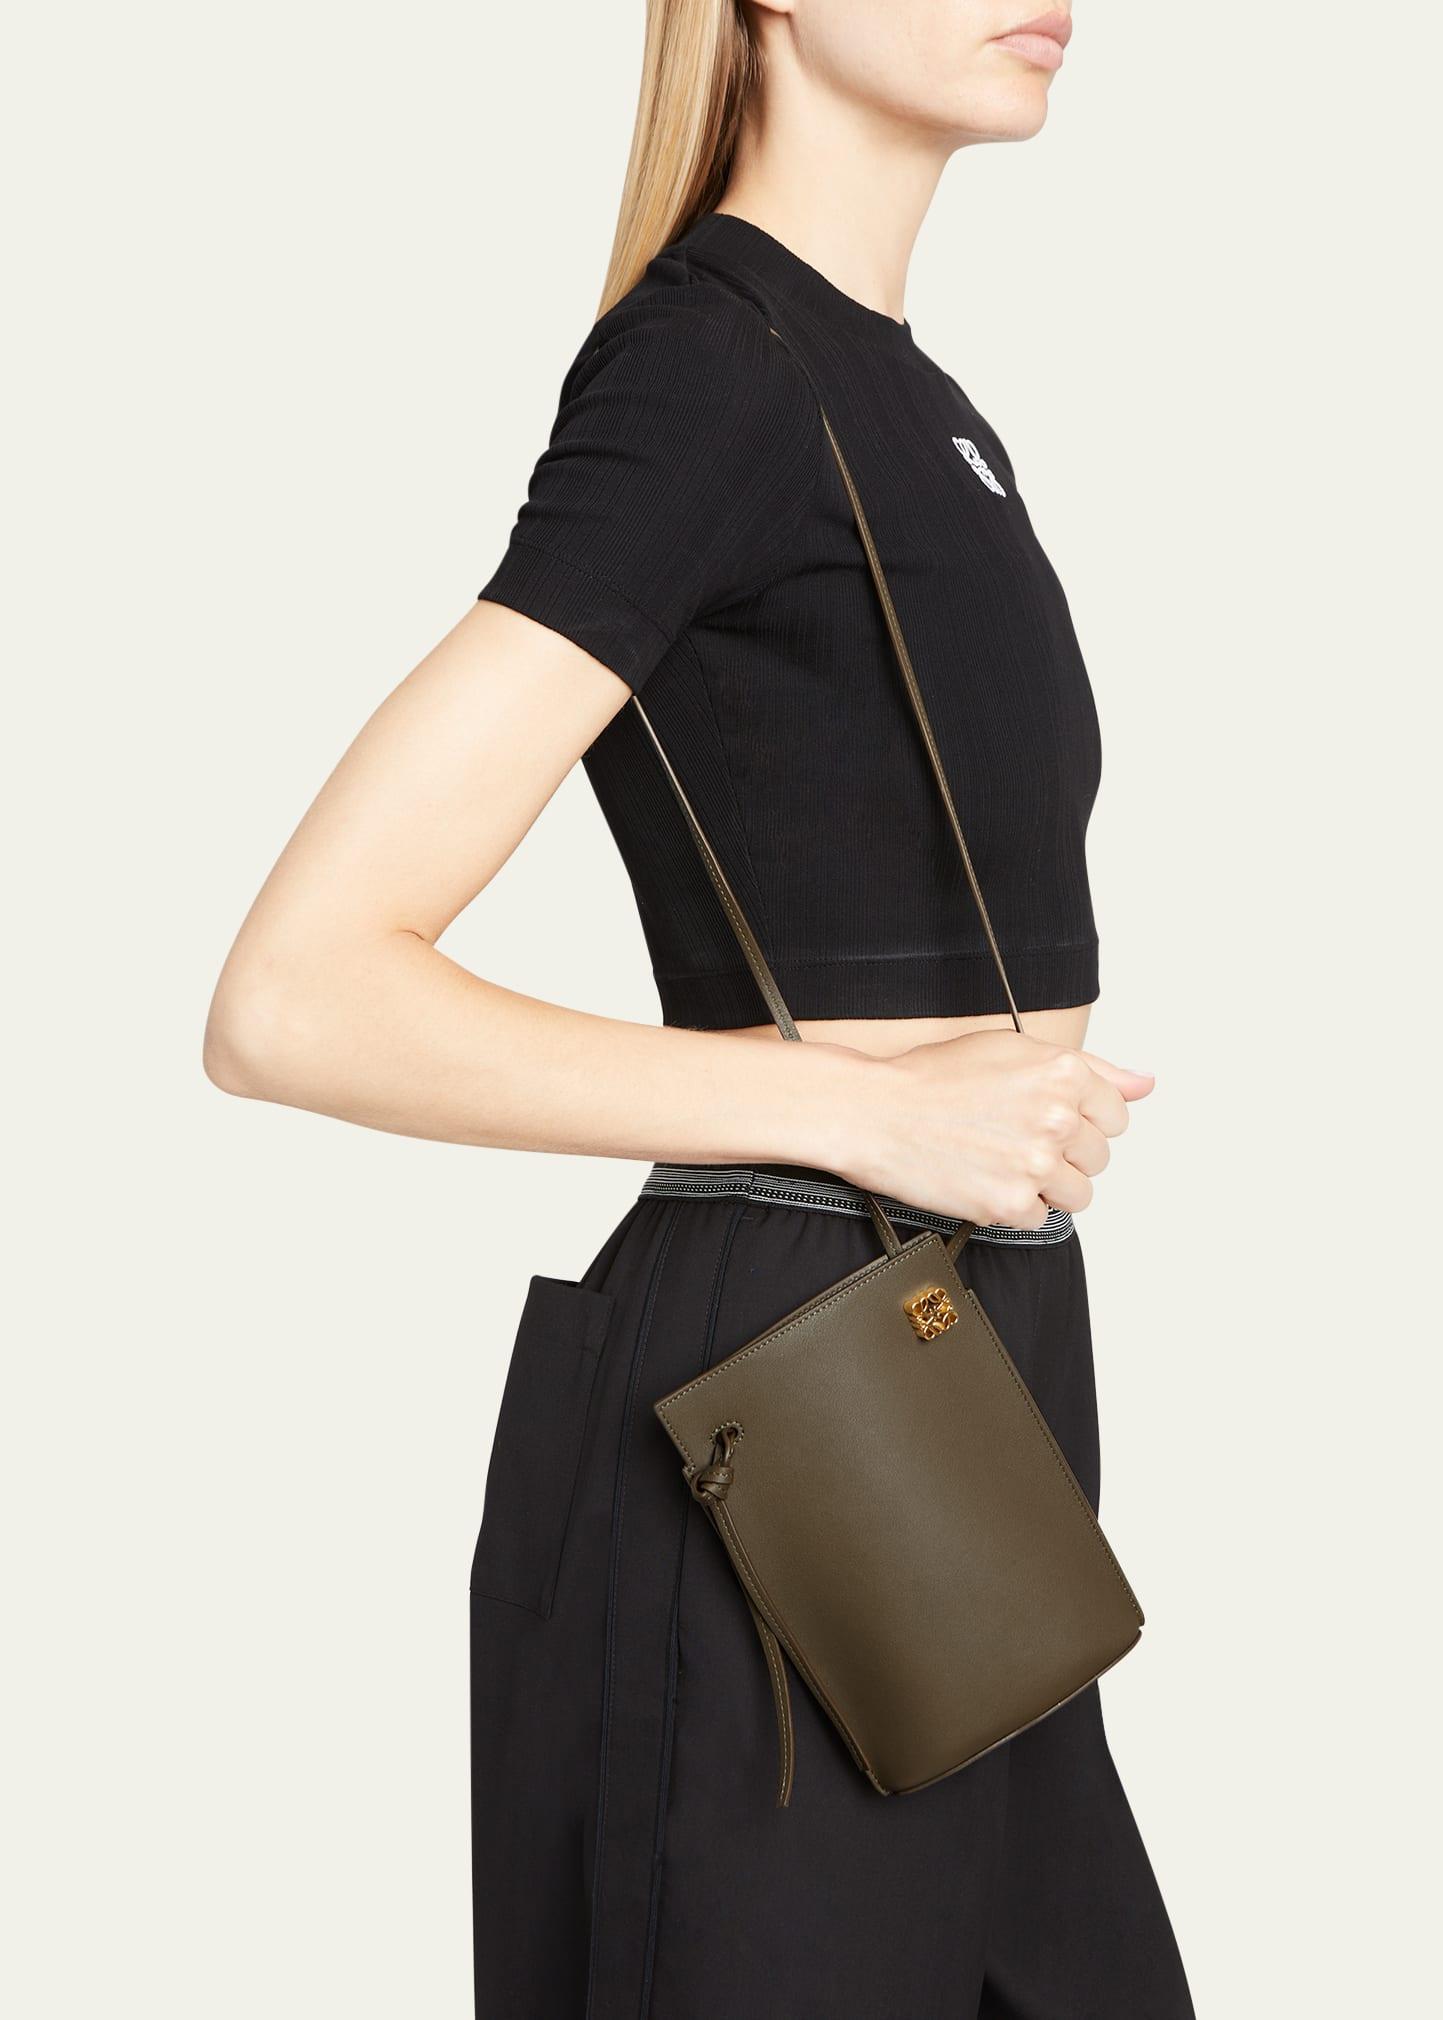 Loewe Dice Pocket Leather Shoulder Bag